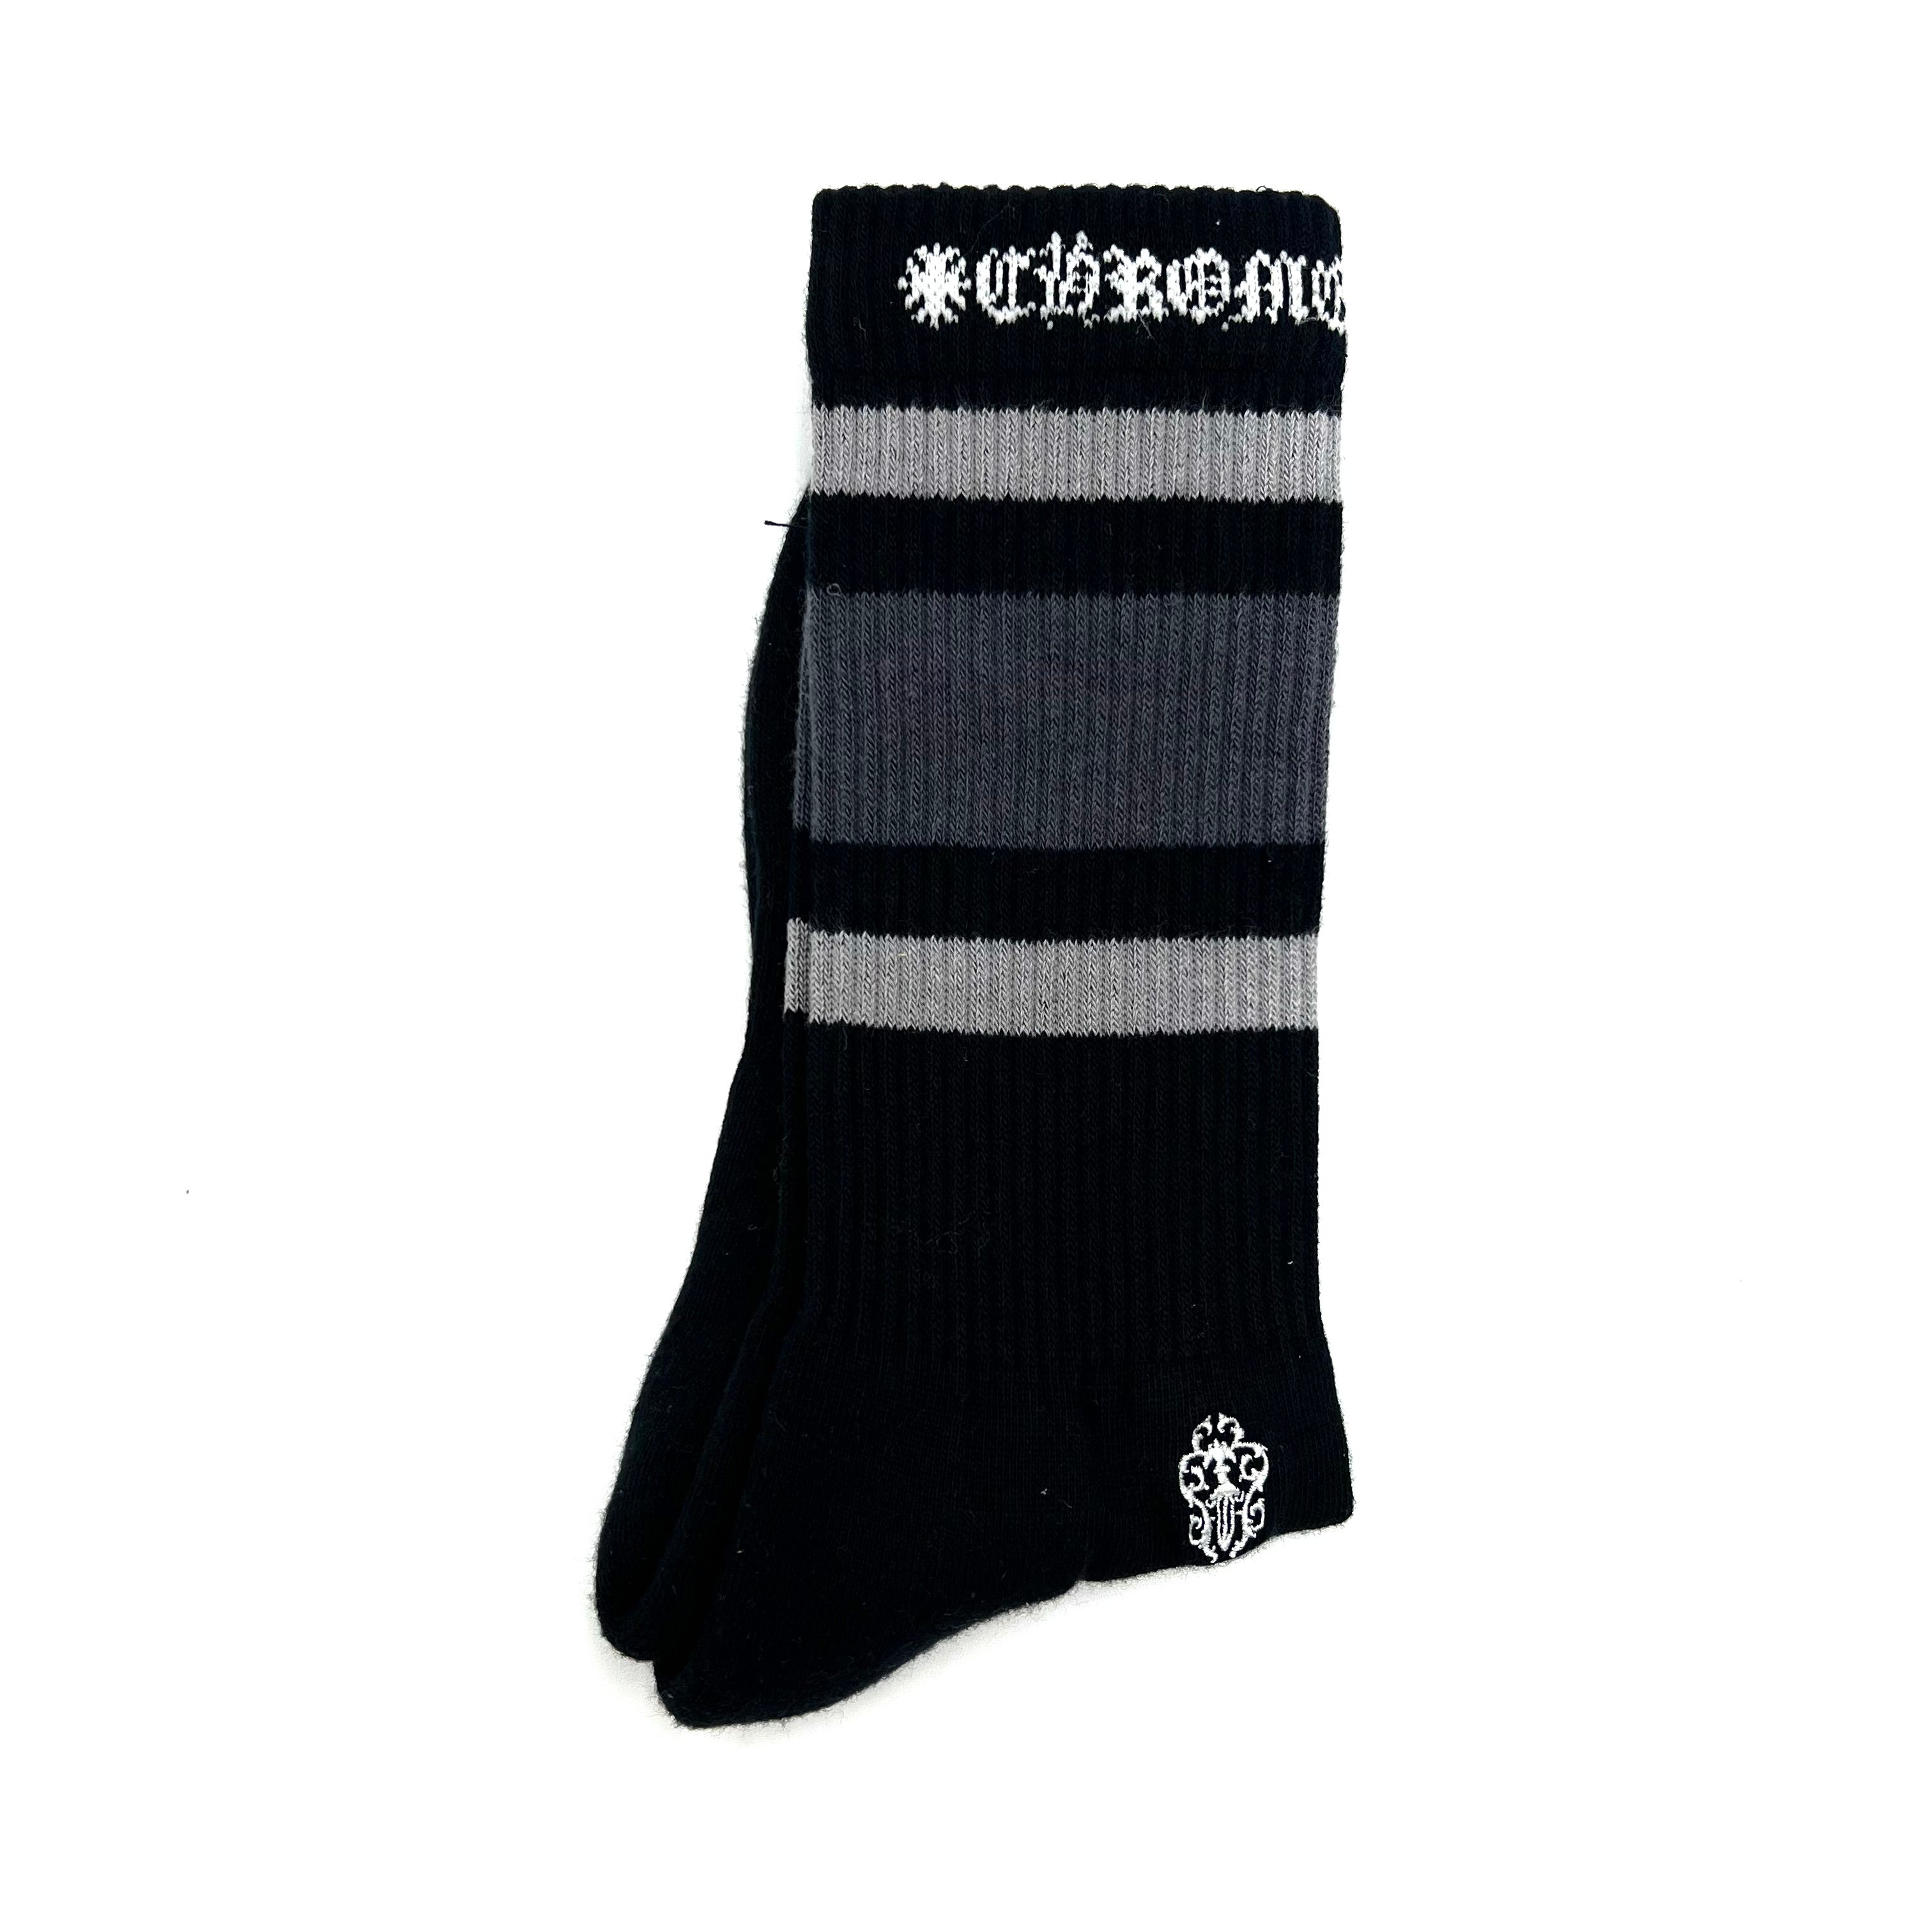 Stripe Socks Grey/Grey/Black